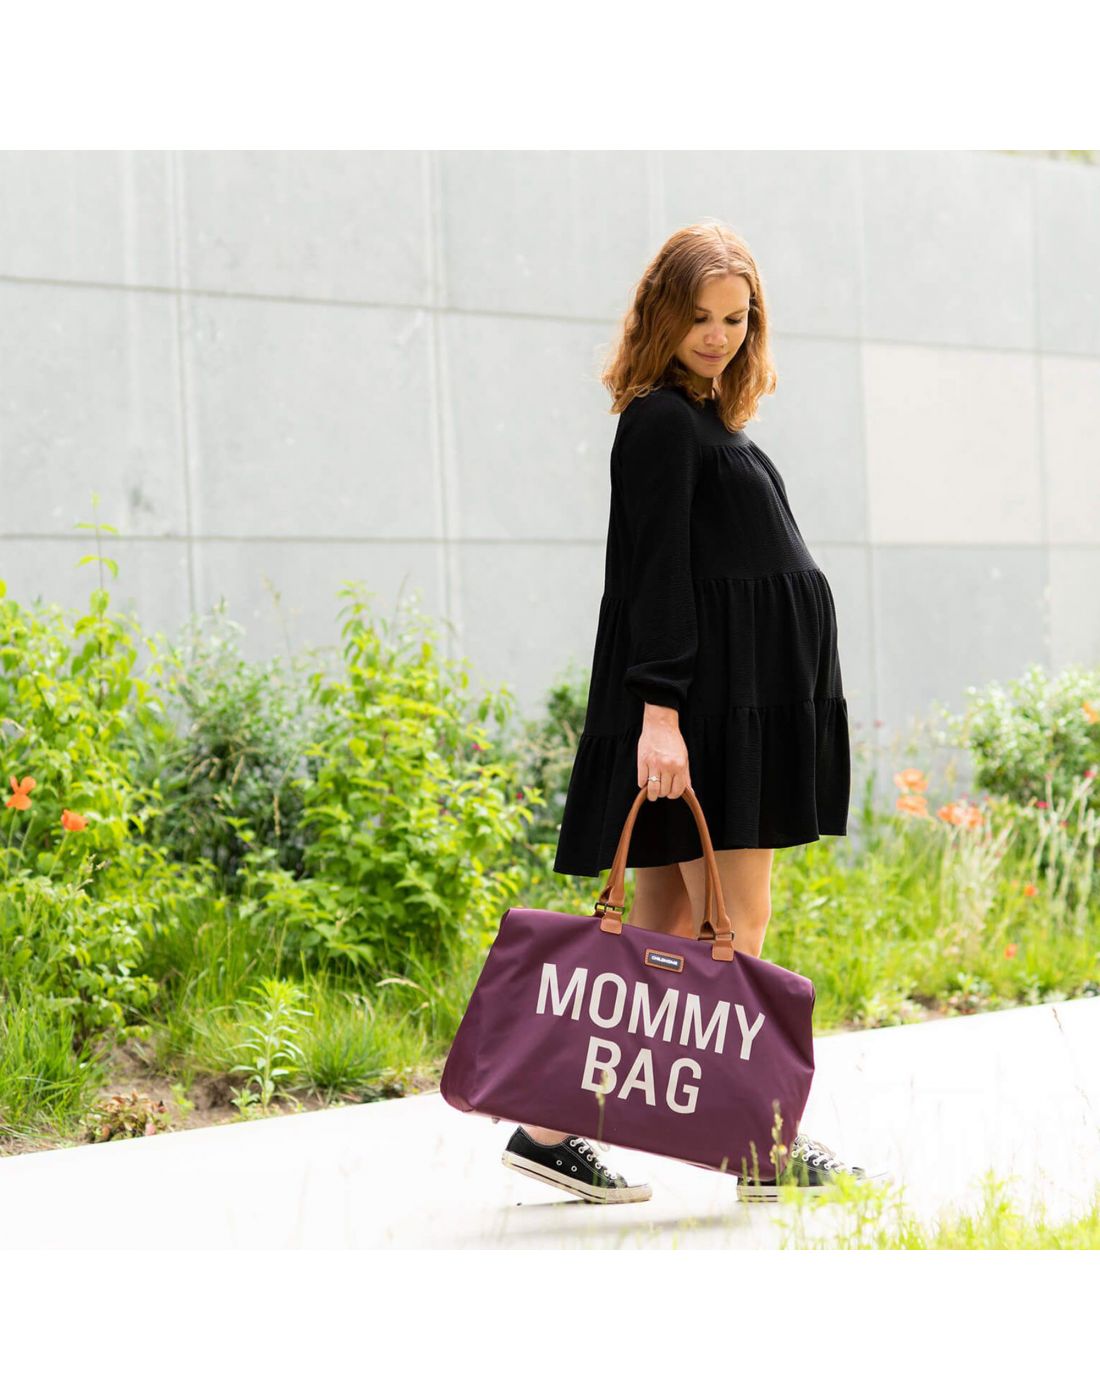 Τσάντα αλλαγής Childhome Mommy Bag Aubergine